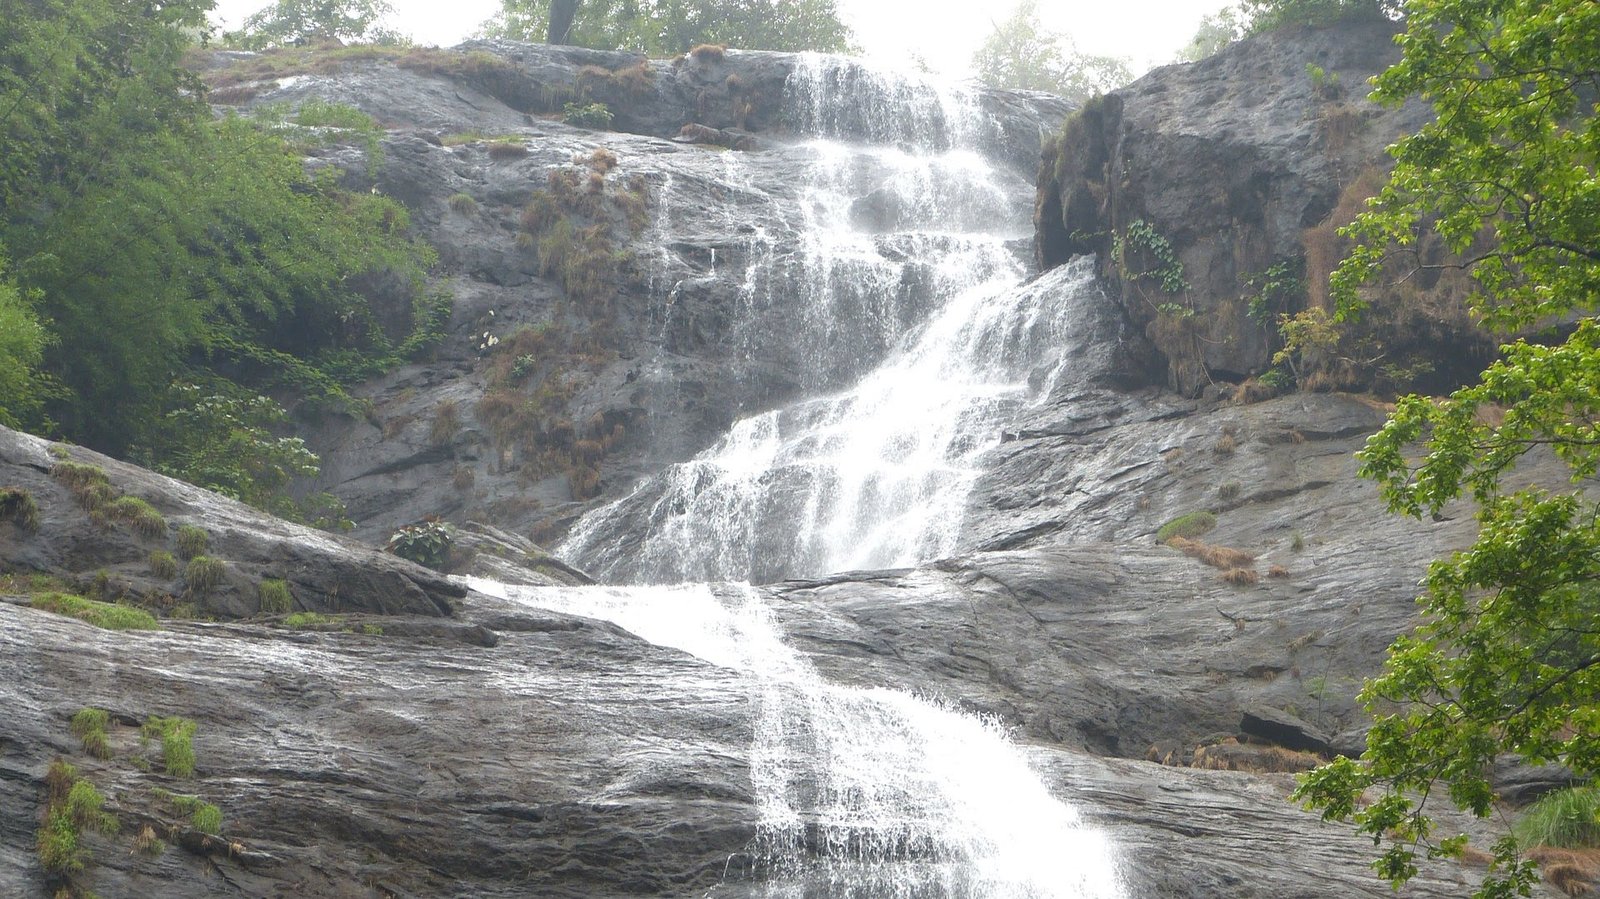 Cheeyappara and Valara waterfalls, Idukki Neriamangalam and Adimali around 10 km on the Kochi - Madurai Highway Idukki